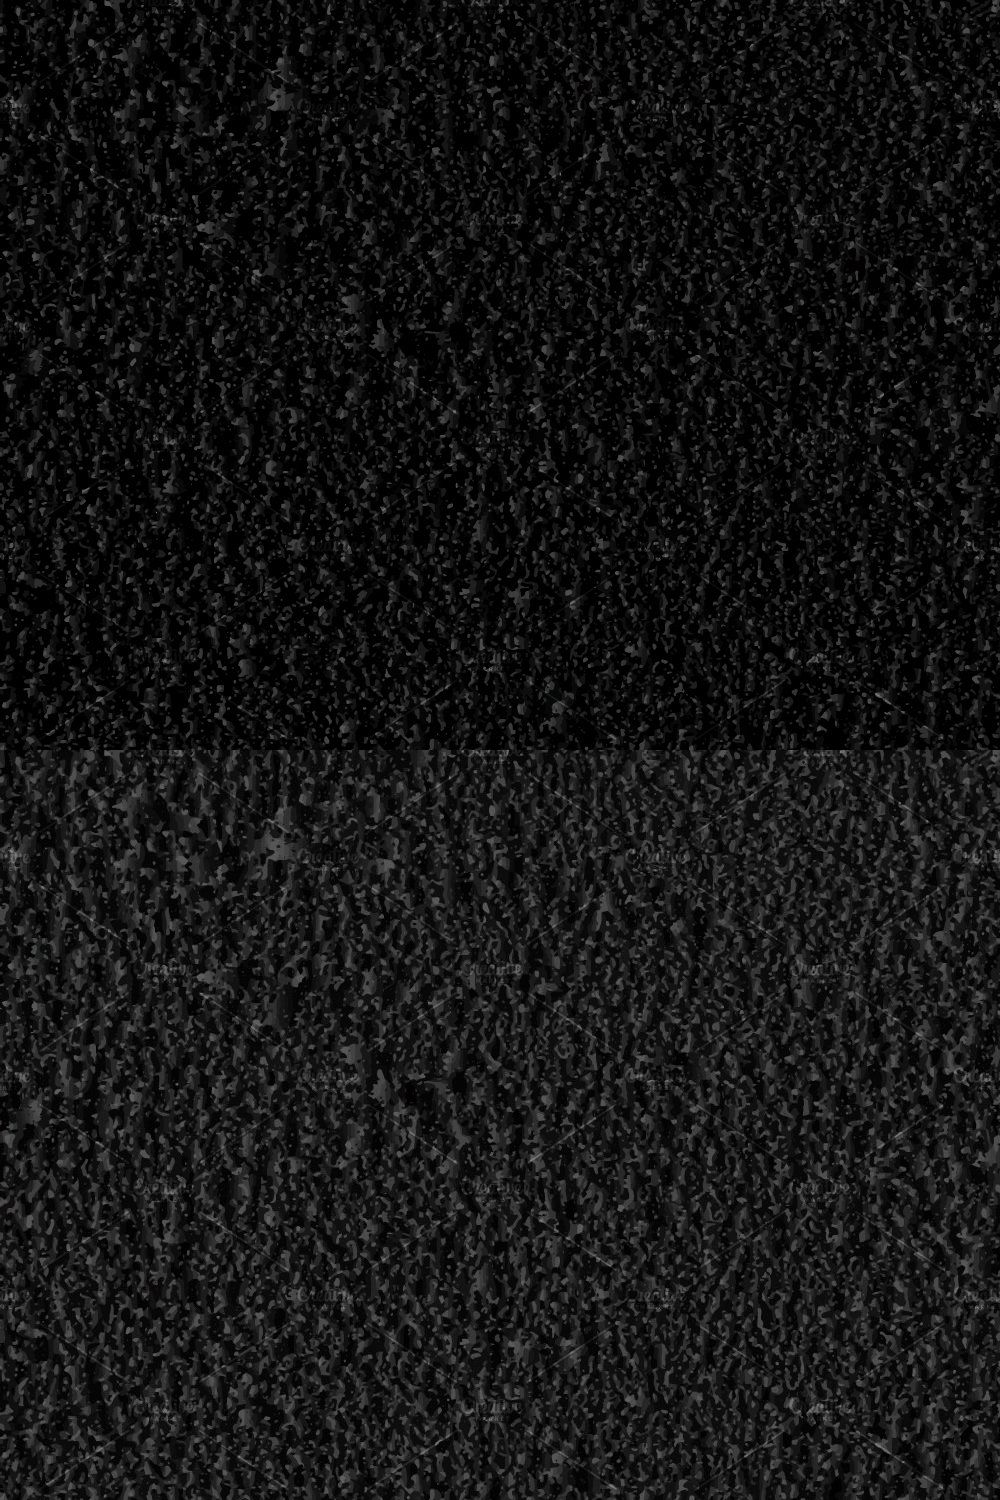 Dark Black Textured Background pinterest preview image.